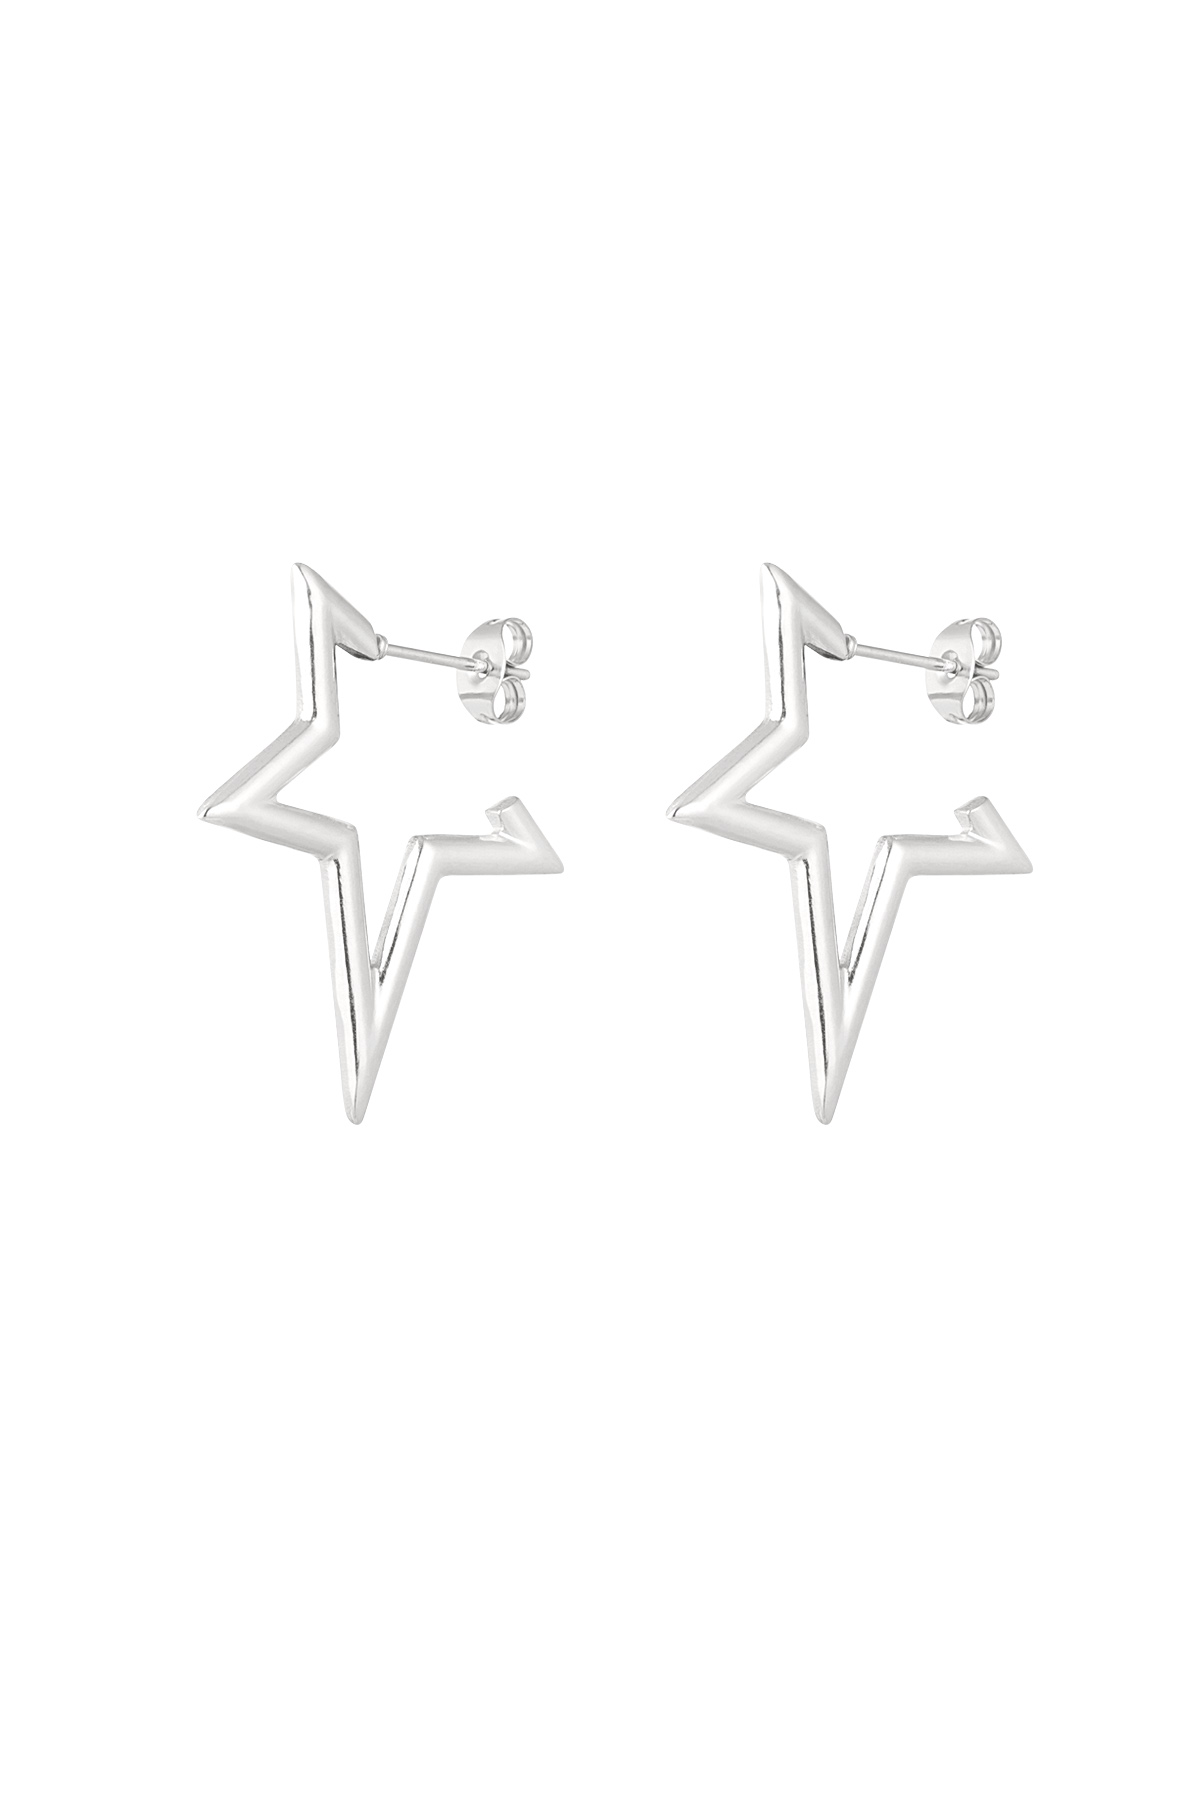 Half star earrings - silver 